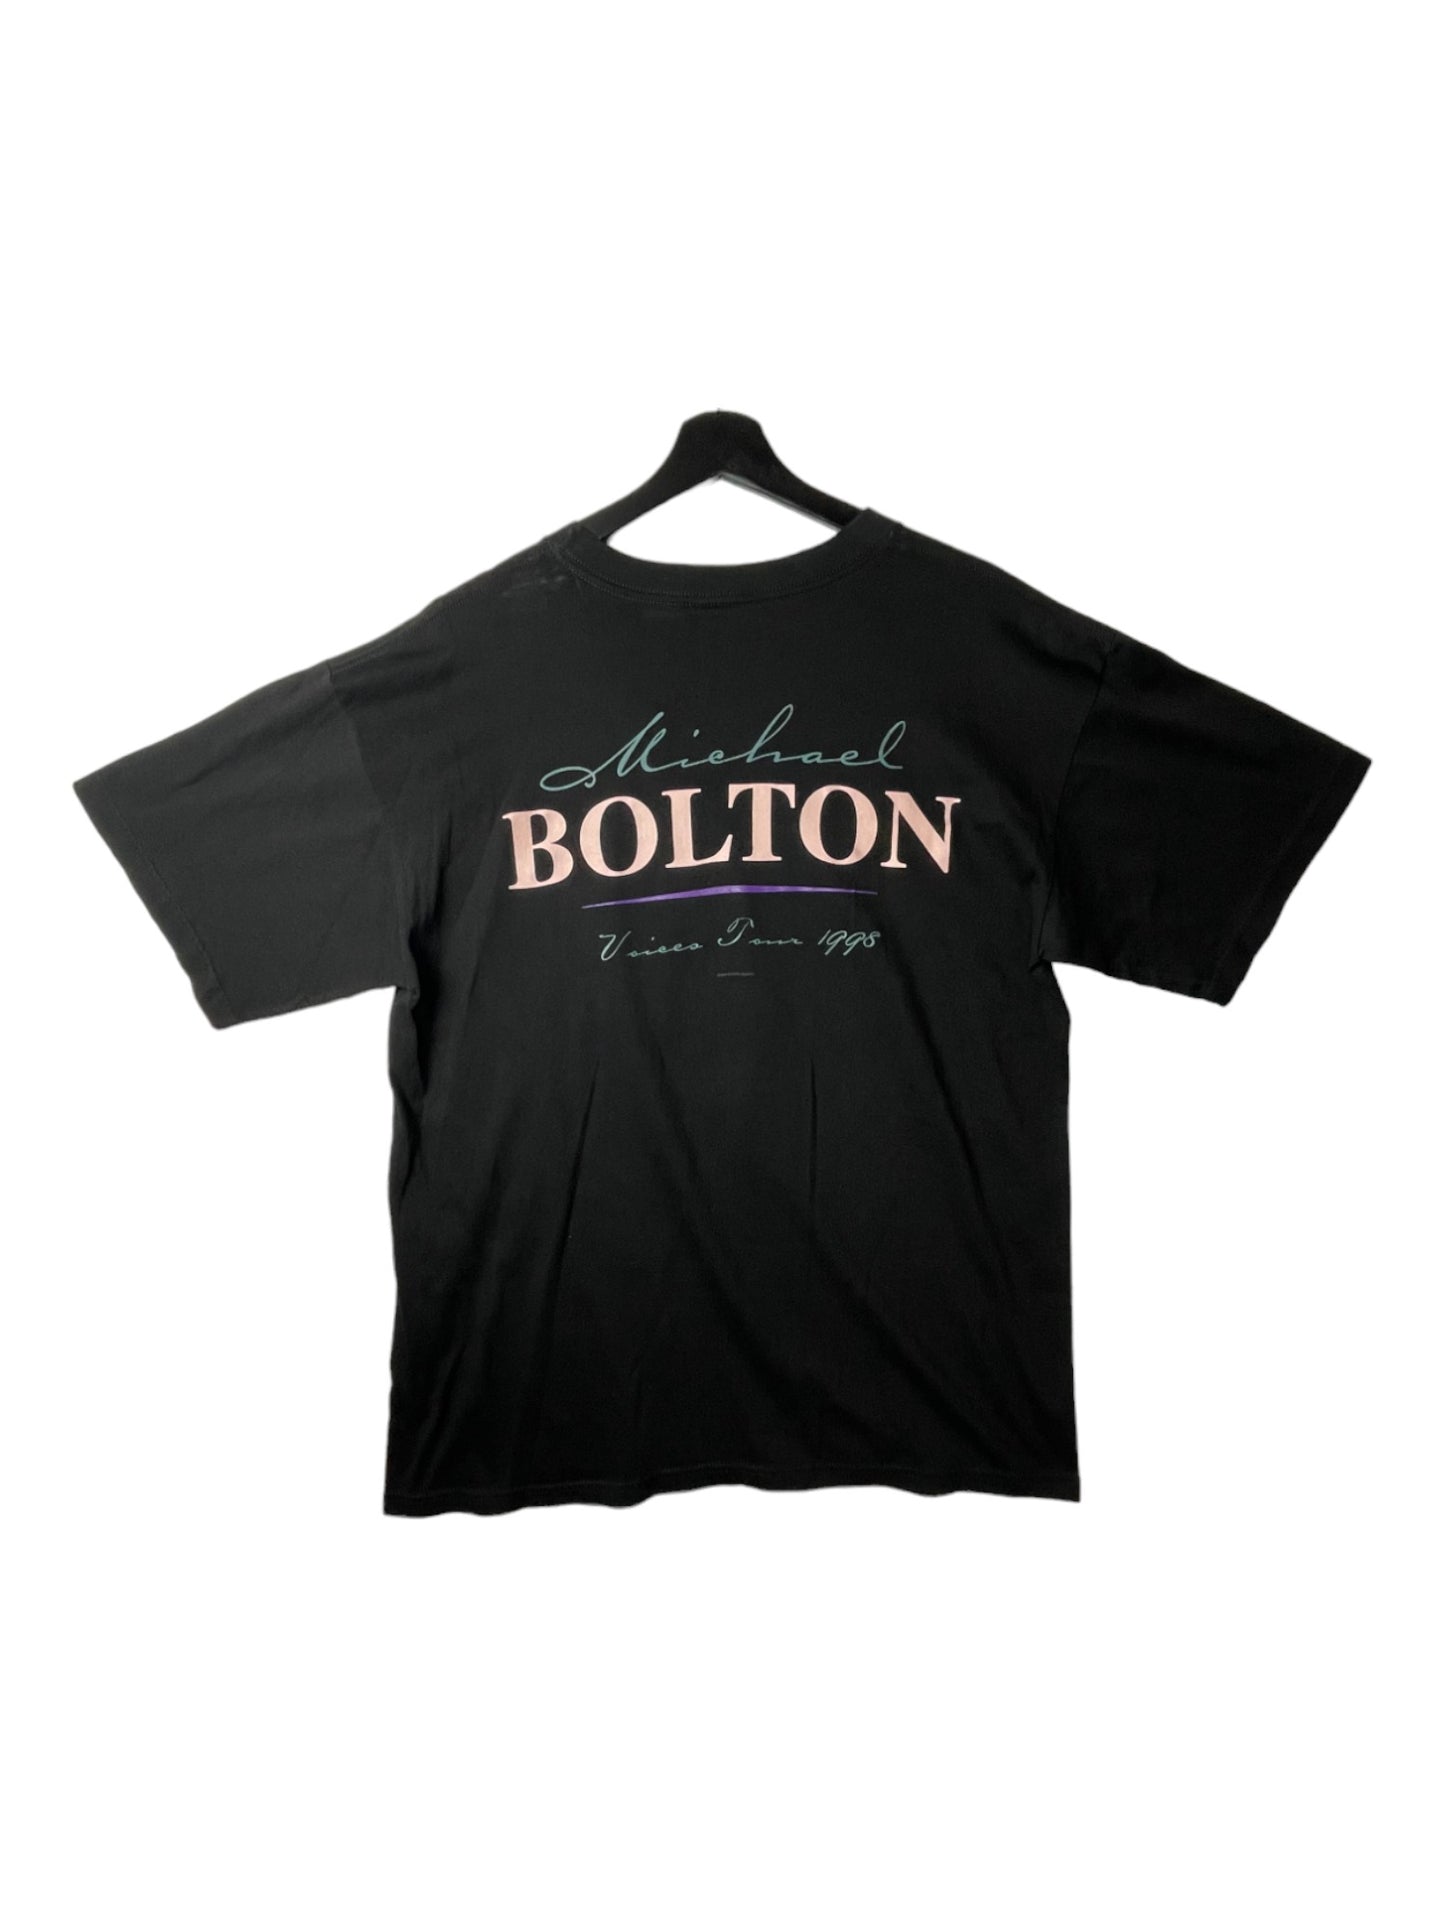 Micheal Bolton T-Shirt